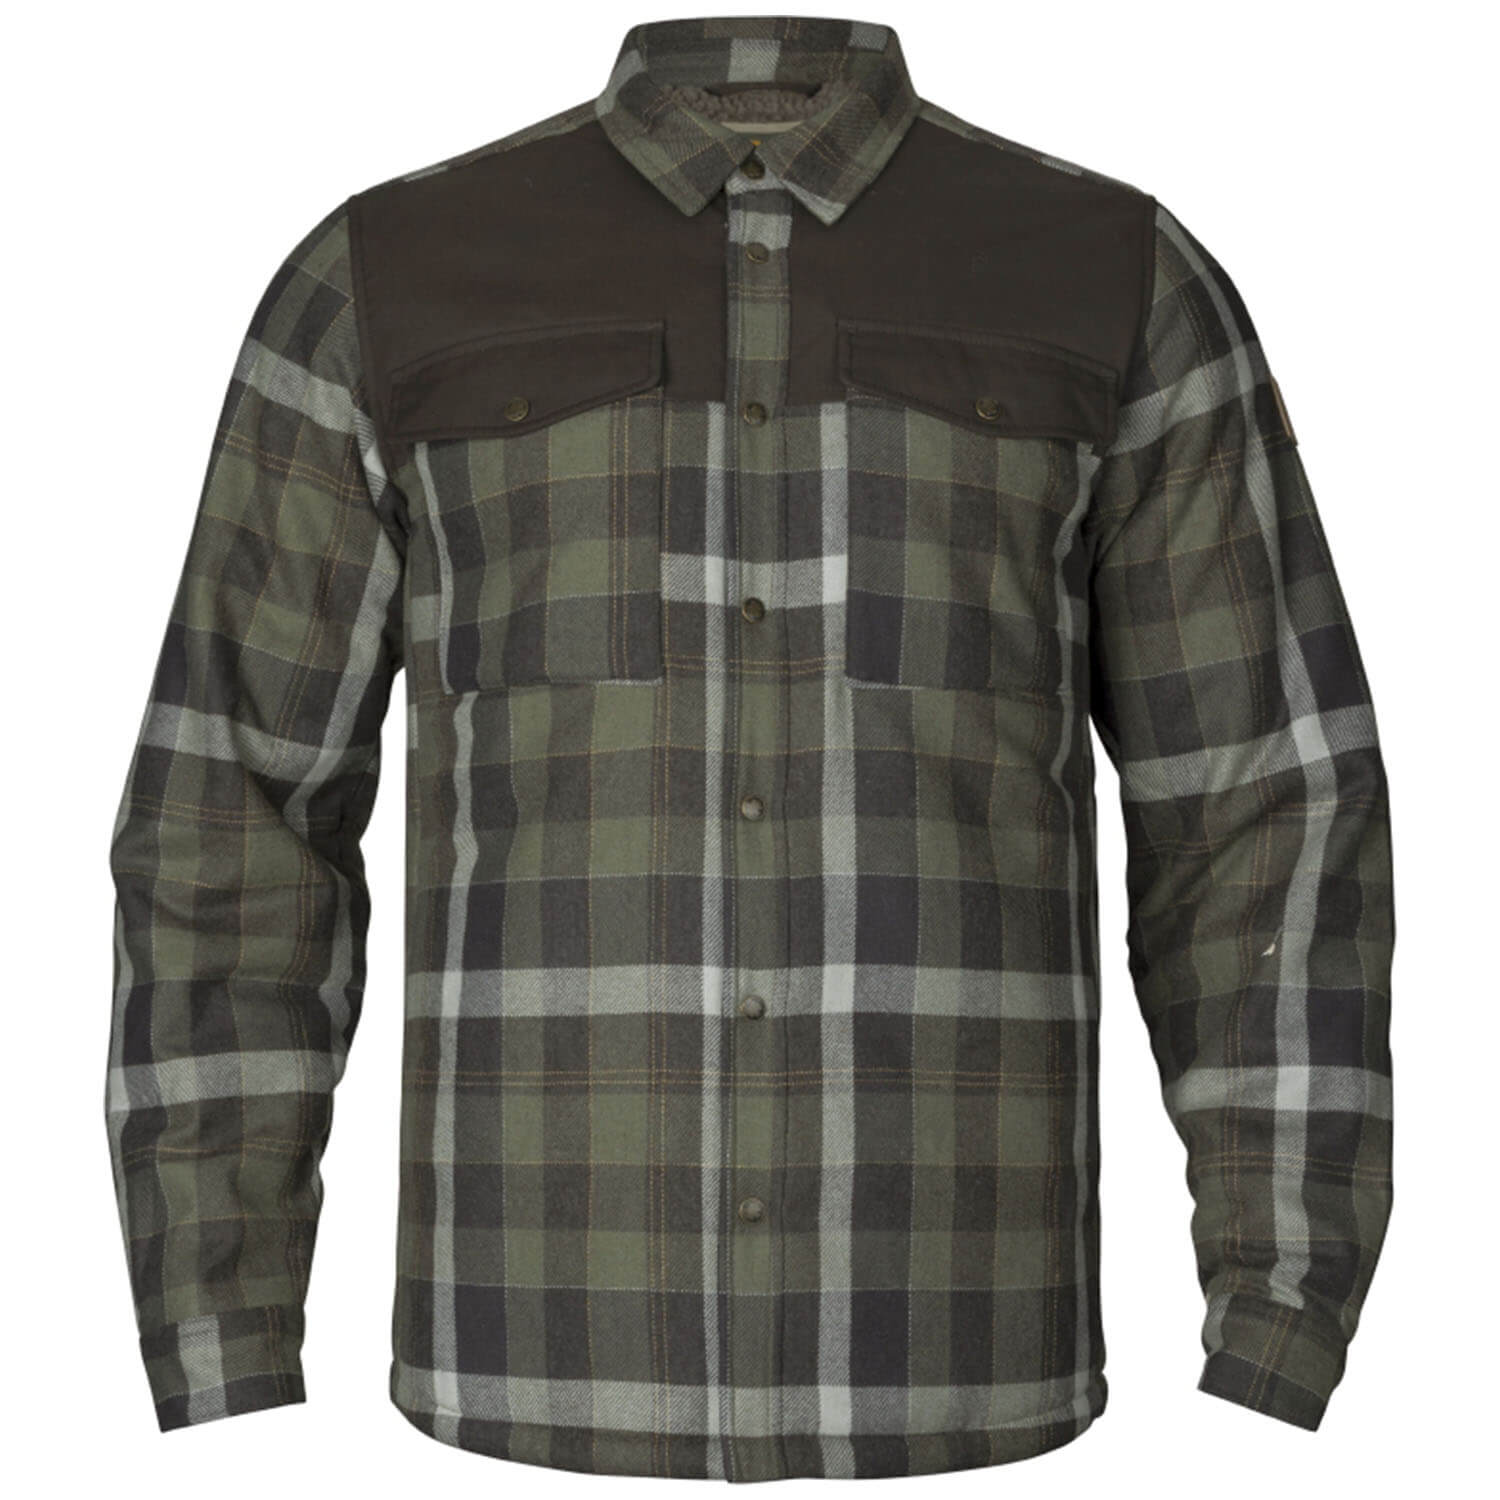 Härkila shirt Asmund wool insulated (green/pahantom) - Hunting Jackets